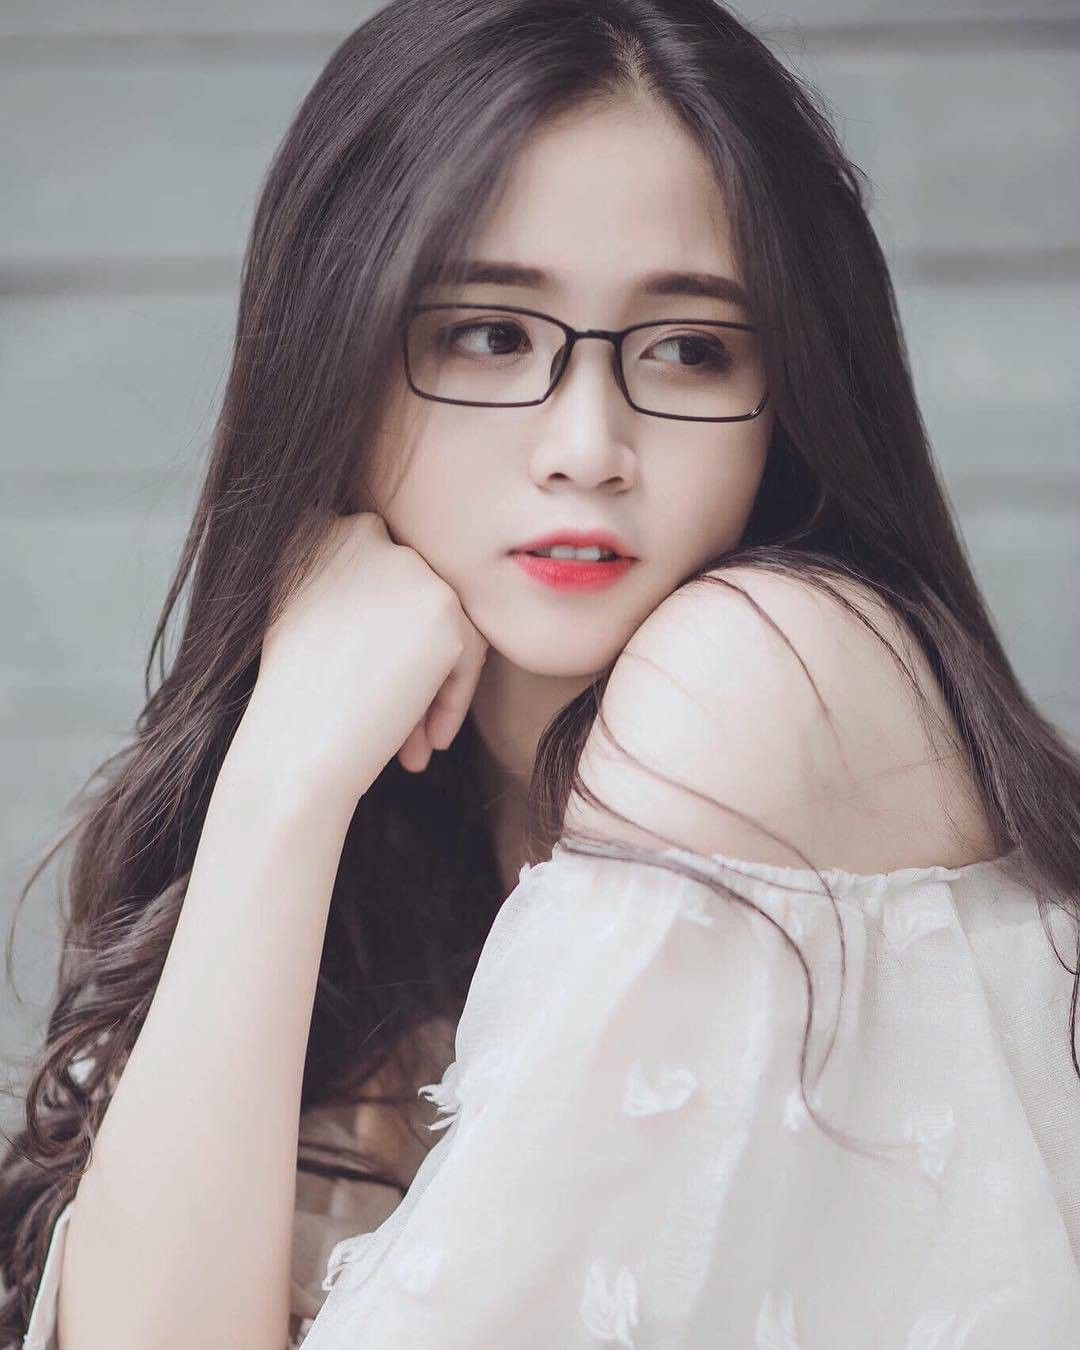 Nếu bạn là fan của gái Việt Nam và tóc dài đẹp, hãy xem hình ảnh này. Không chỉ có các kiểu tóc đầy quyến rũ, mà còn sự tinh tế và thanh lịch của người Việt.